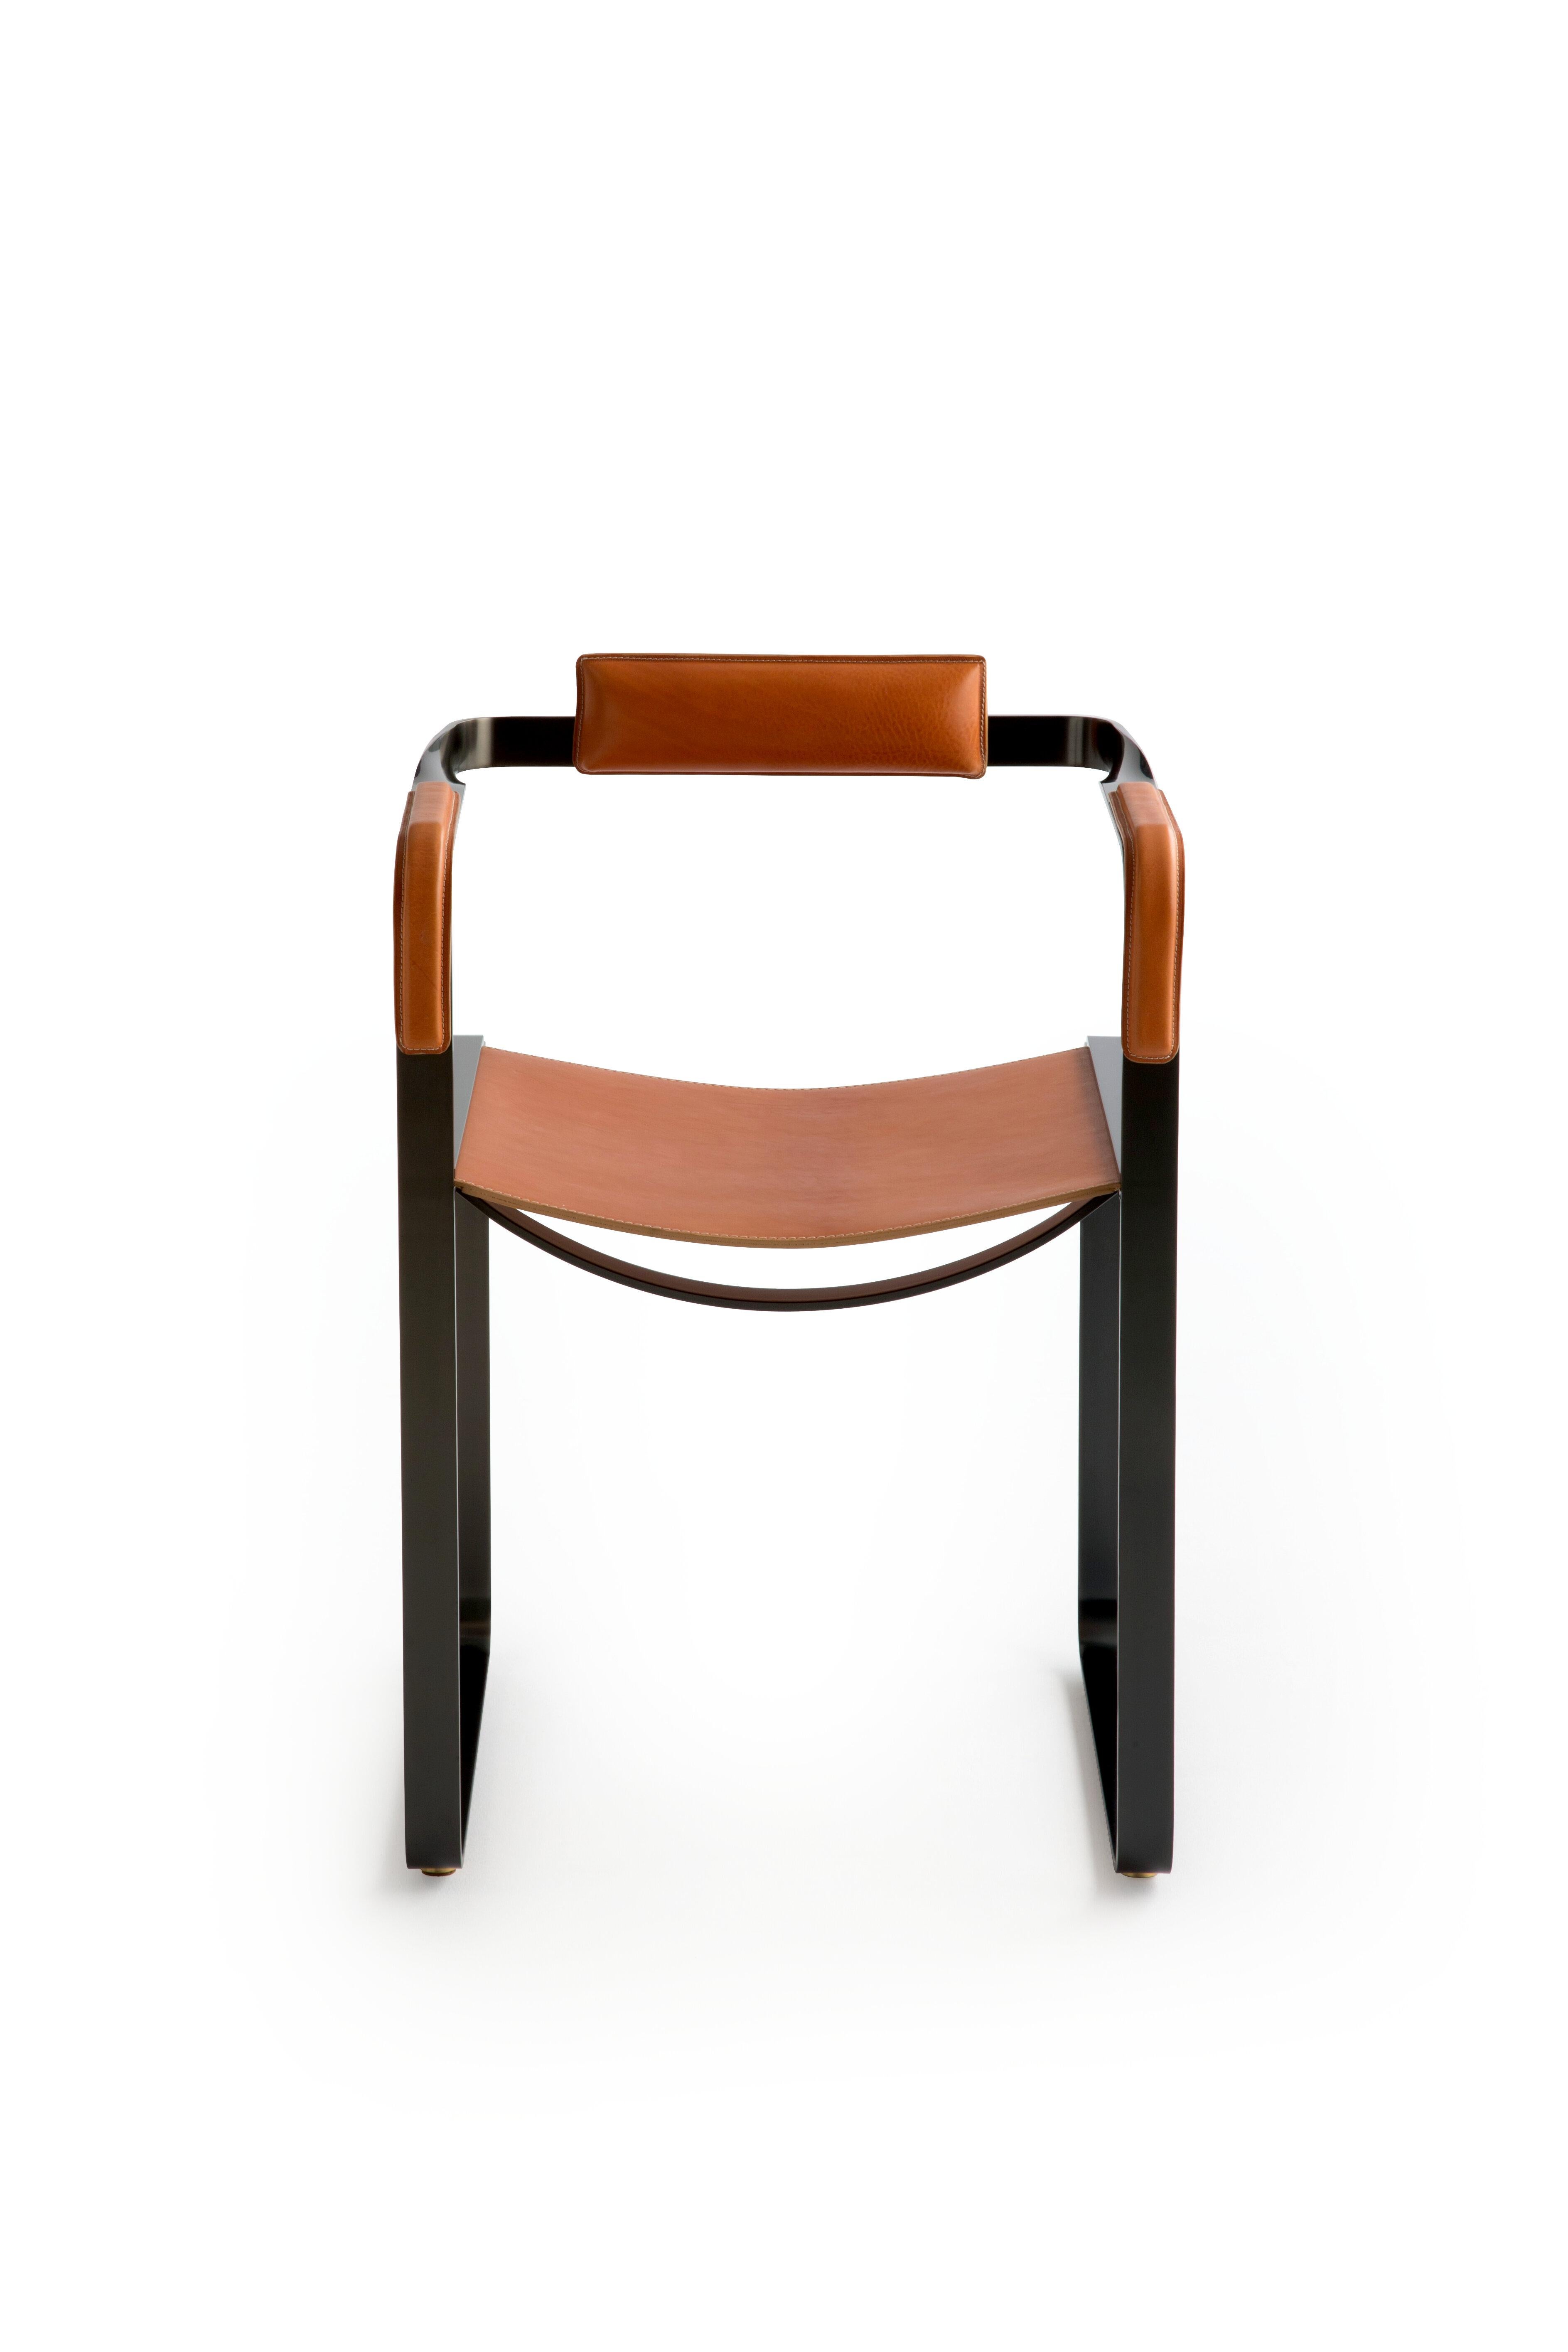 Muster im Ausstellungsraum

Der zeitgenössische Sessel Wanderlust gehört zu einer Kollektion von minimalistischen und ruhigen Stücken, bei denen sich Exklusivität und Präzision in kleinen, auf den ersten Blick unscheinbaren Details wie den